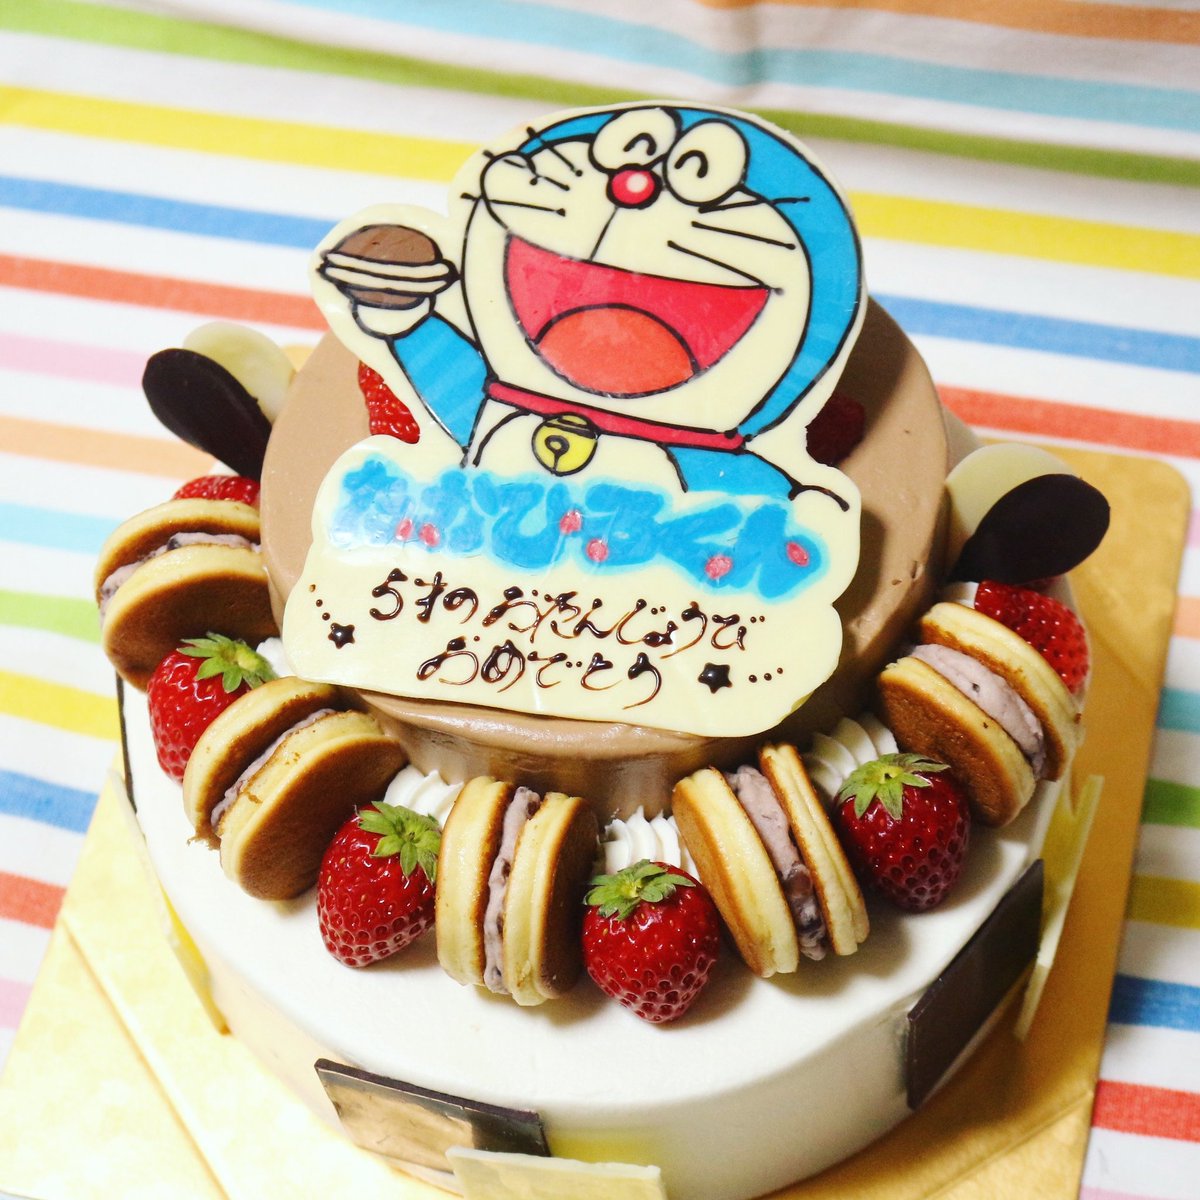 マカロンさん 夏場は試作が出来る ２枚目は角度を変えて ドラえもんのチョコイラストケーキです 周りにはどら焼きをトッピングしてます 完全にドラえもんケーキ プロフィールもご覧ください お菓子教室ドシラソ ドラえもん Doraemon